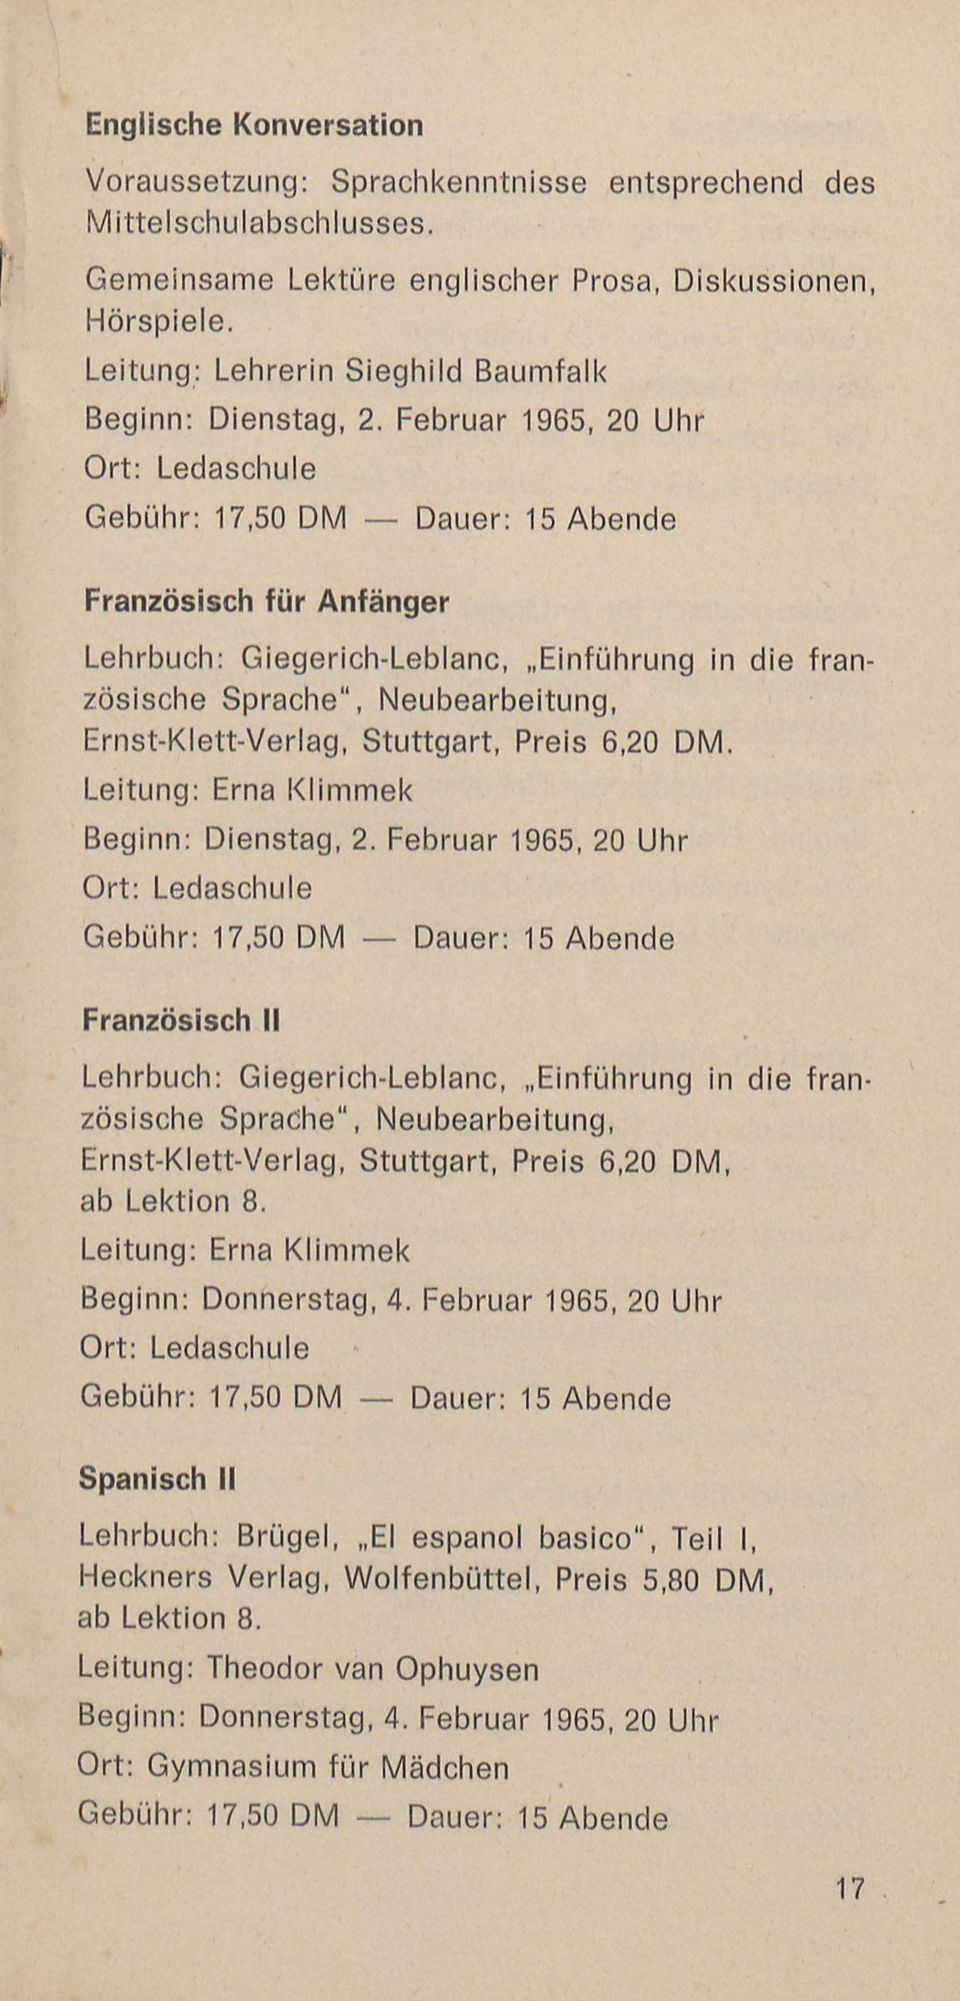 Februar 1965, 20 Uhr O rt: Ledaschule Französisch für Anfänger Lehrbuch: Giegerich-Leblanc, Einführung in die französische Sprache", Neubearbeitung, Ernst-Klett-Verlag, S tuttgart, Preis 6,20 DM.